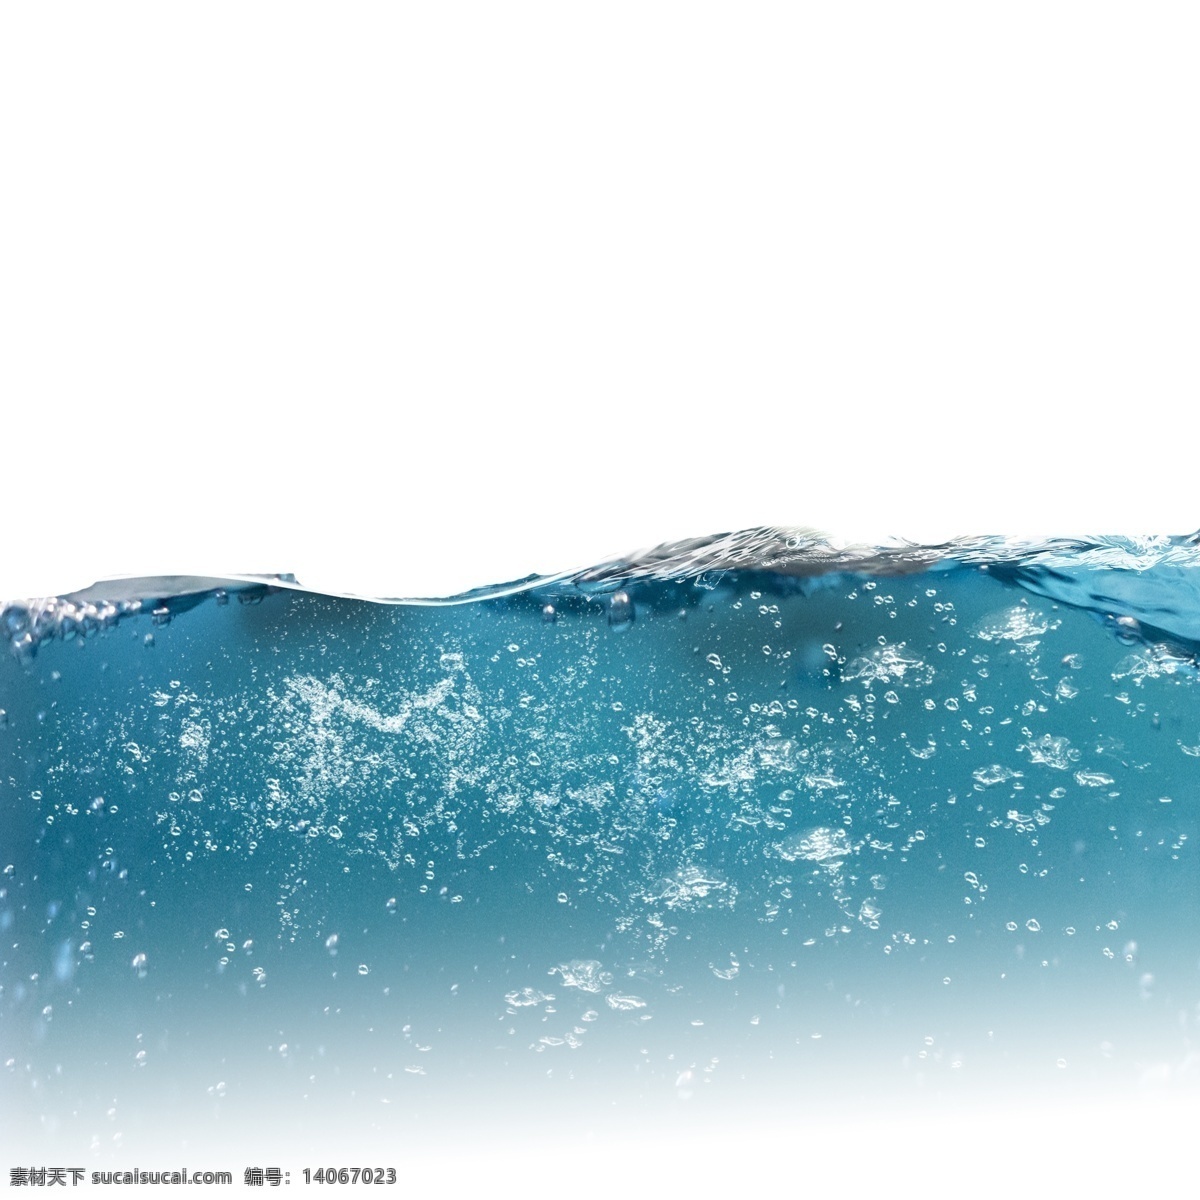 精美 蓝色 水面 氧气 气泡 元素 水泡 唯美 漂浮 水滴 装饰 水底 慢慢 升起 透心凉水珠 密集的水珠 宁静的水平面 海水 氧气气泡